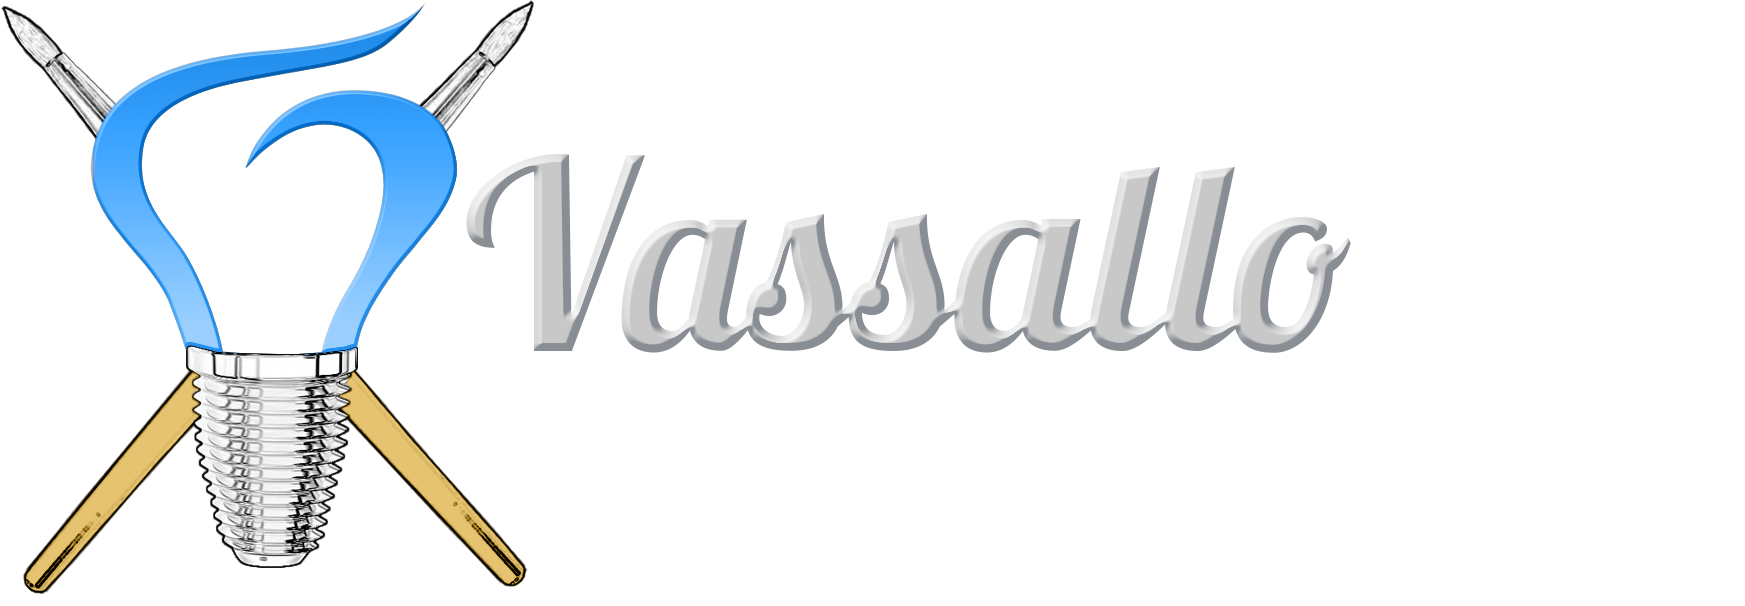 Vassallo_LogoX